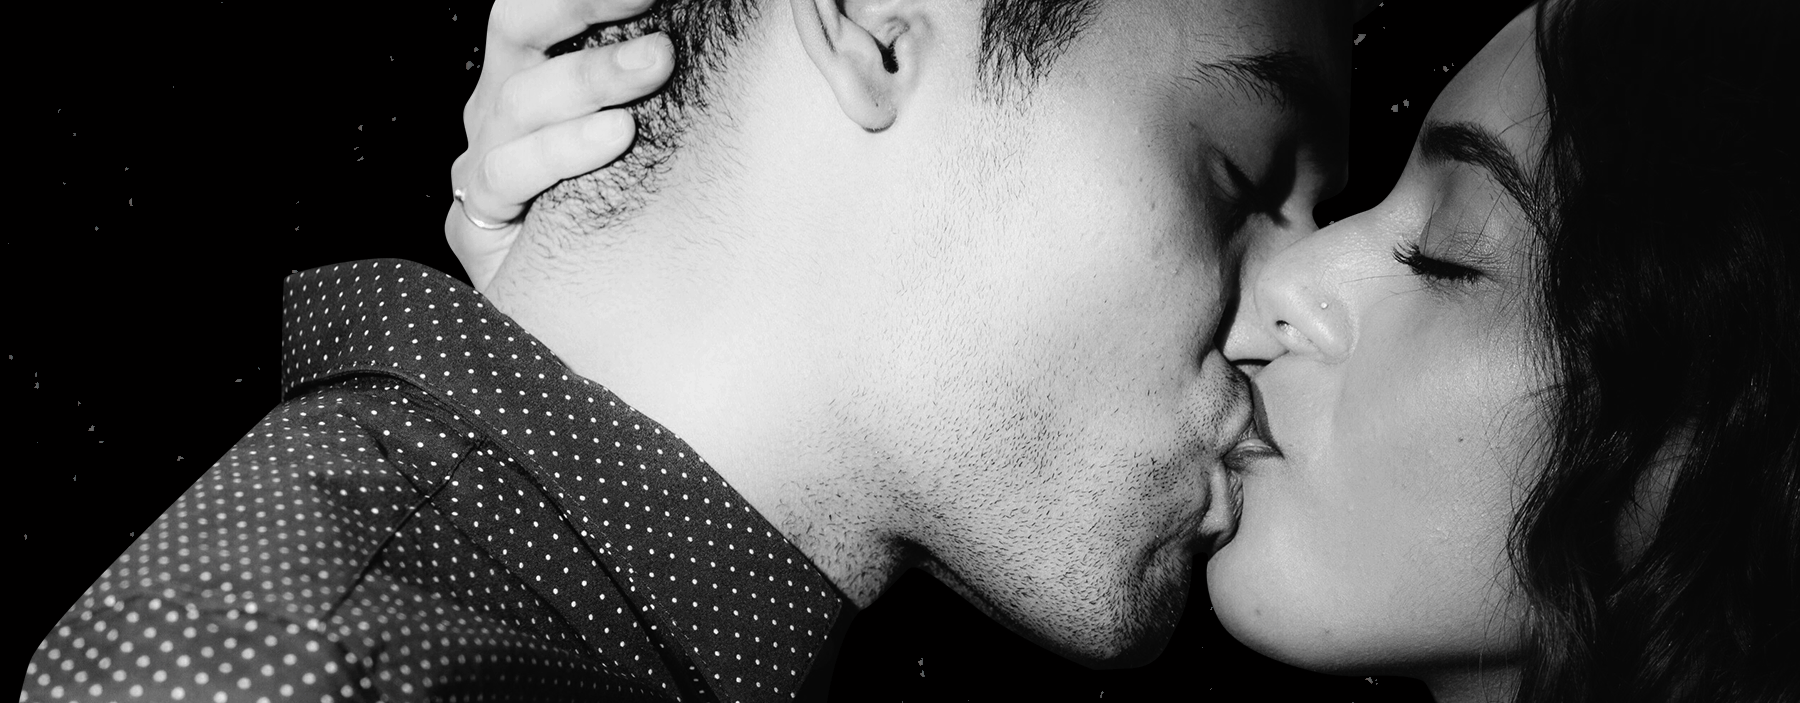 как поцеловать своего мужчину в член фото 112